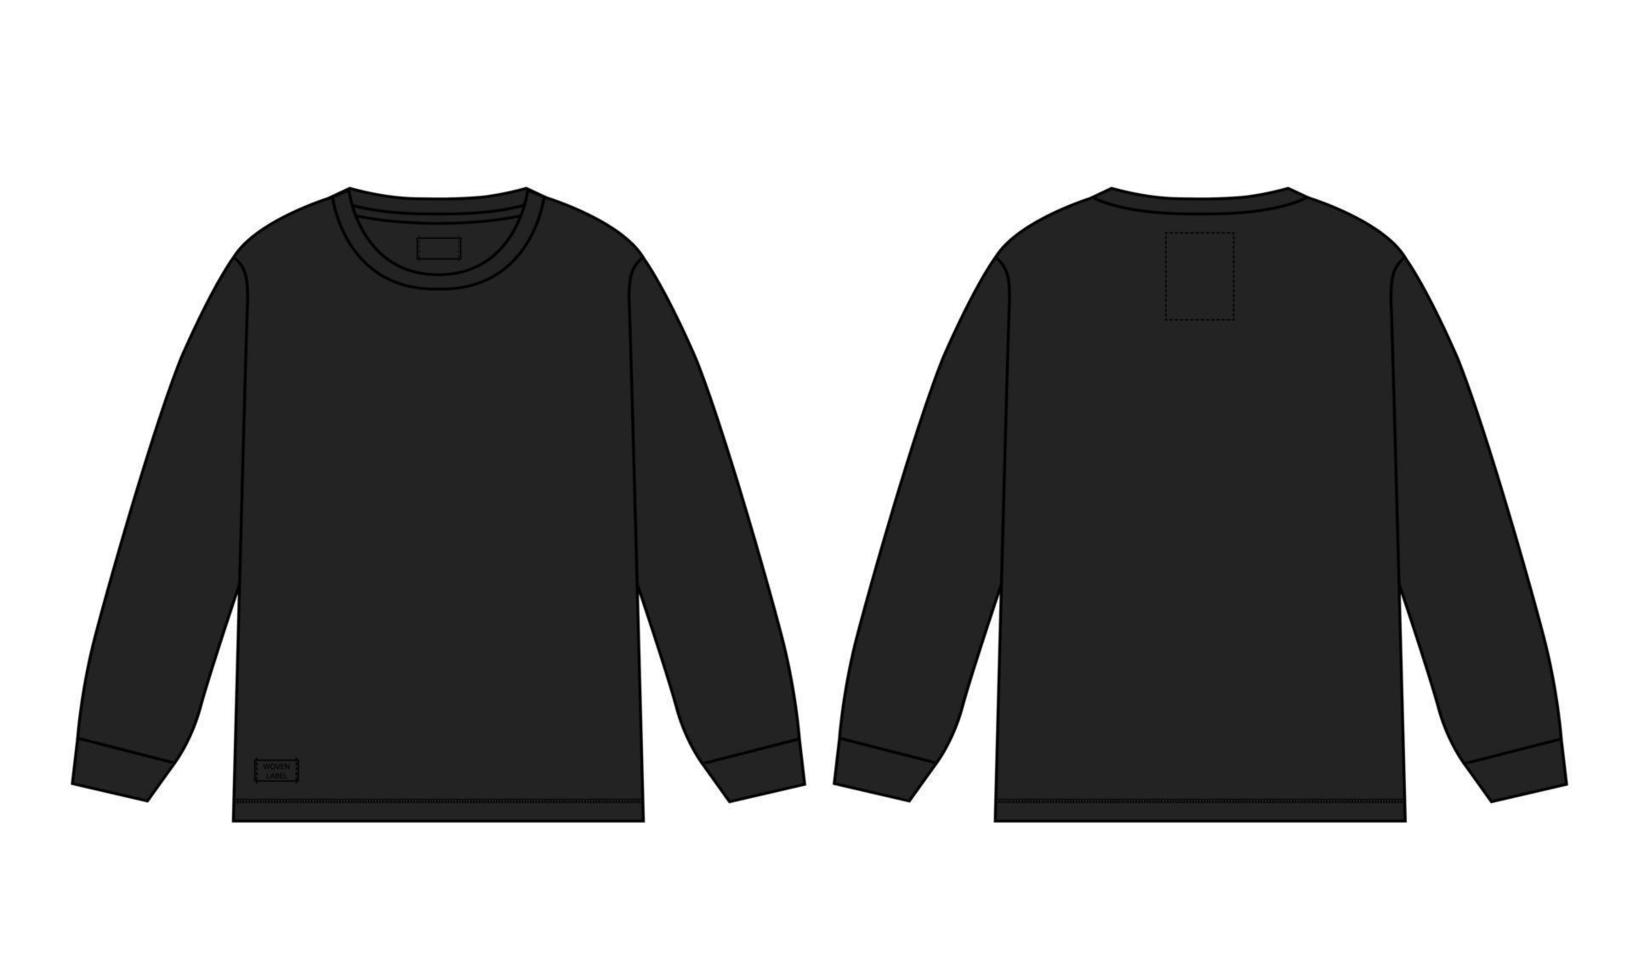 Langarm-T-Shirt technische Mode flache Skizze Vektor-Illustration schwarze Vorlage Vorlage Vorder- und Rückansicht vektor